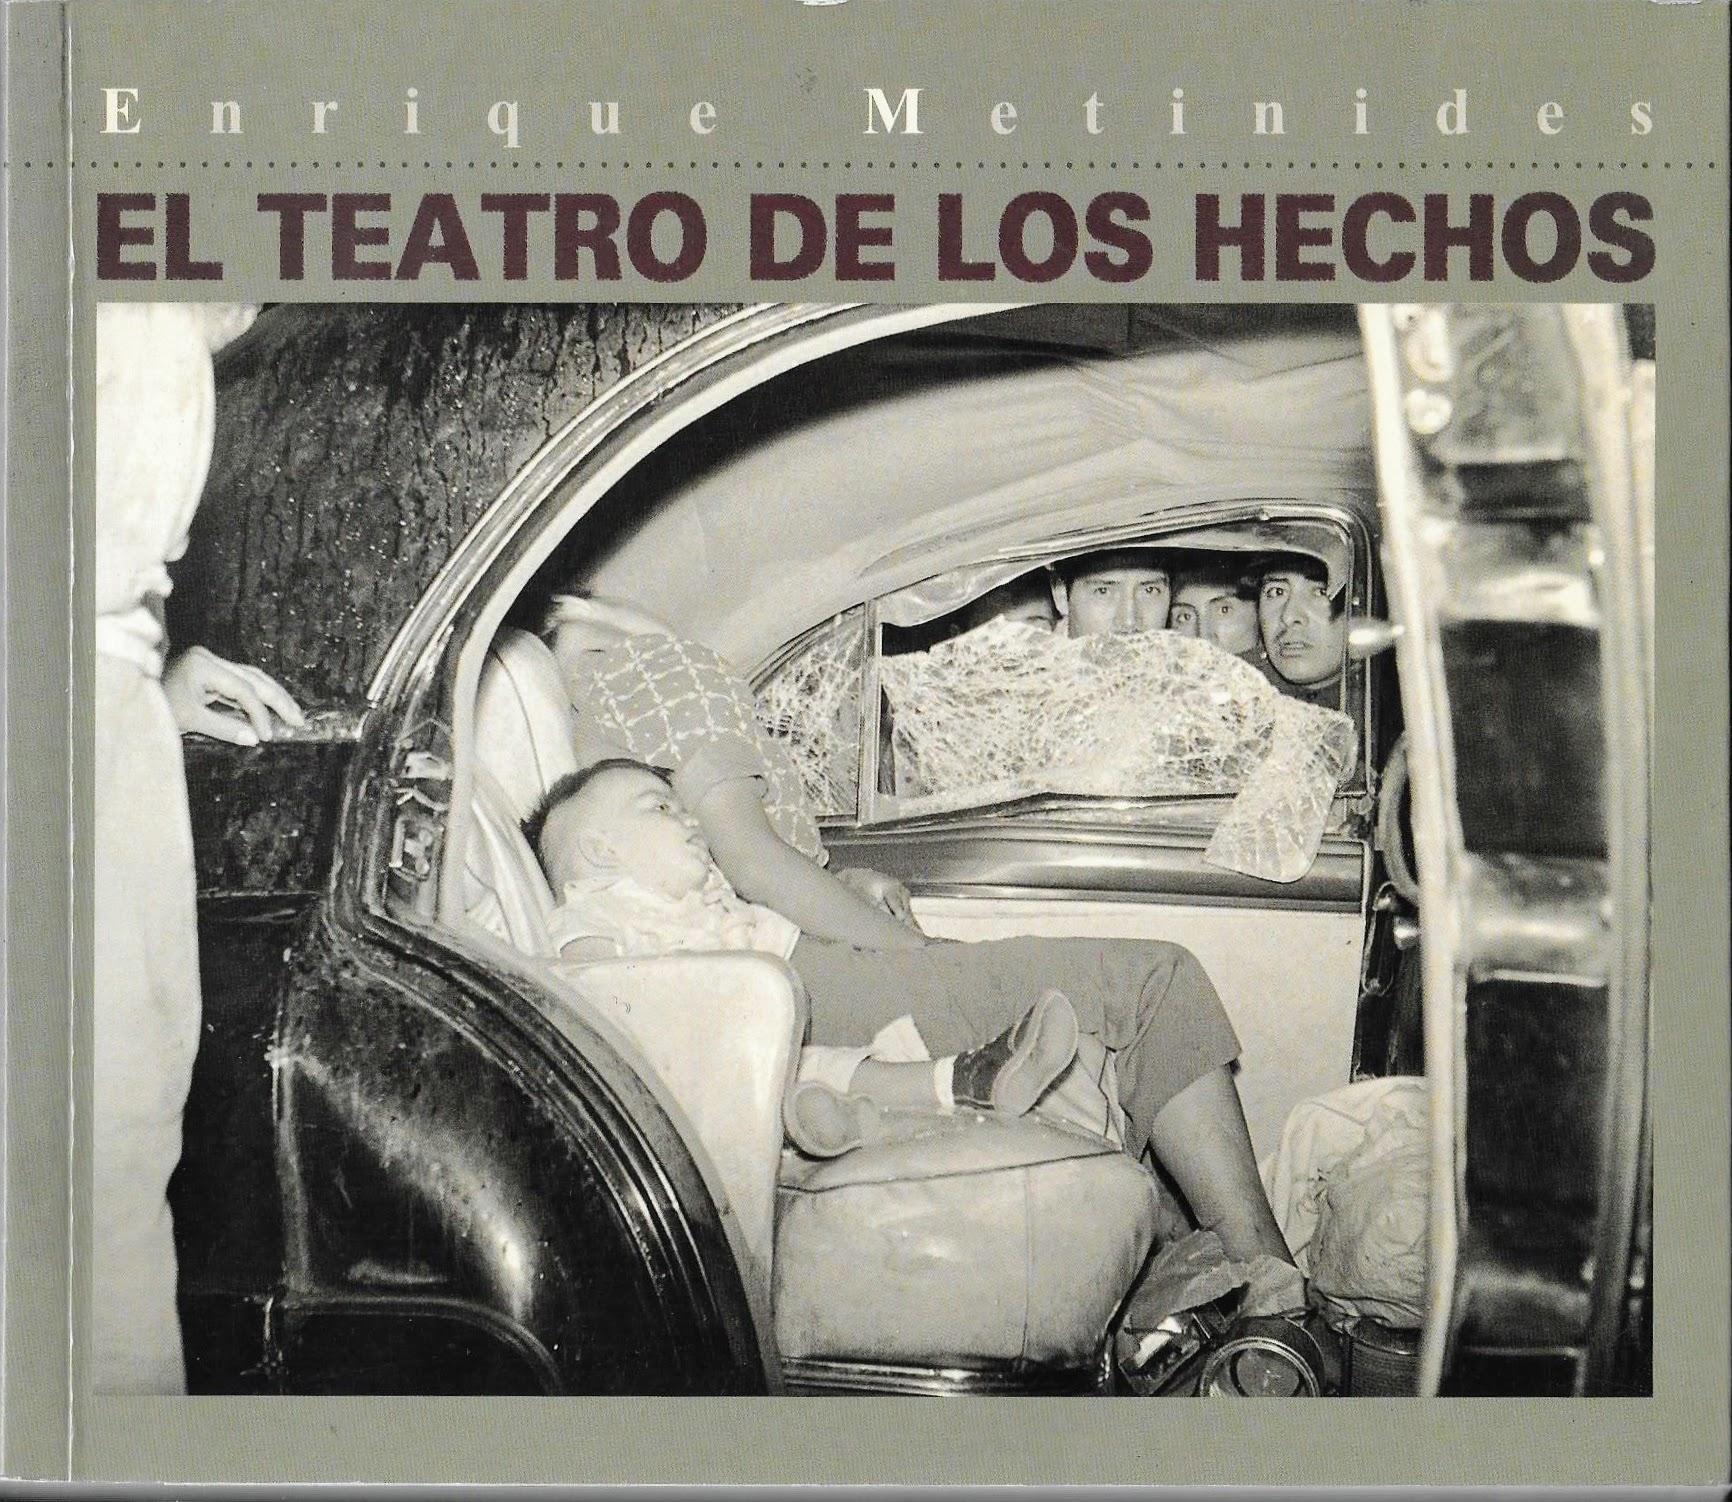 Livre difficile à trouver présentant le travail d'Enrique Metinides (février 1934- janvier 2022), photojournaliste mexicain connu pour ses photos étonnantes et choquantes d'accidents, d'incendies et d'incidents violents dans les rues de Mexico. Il